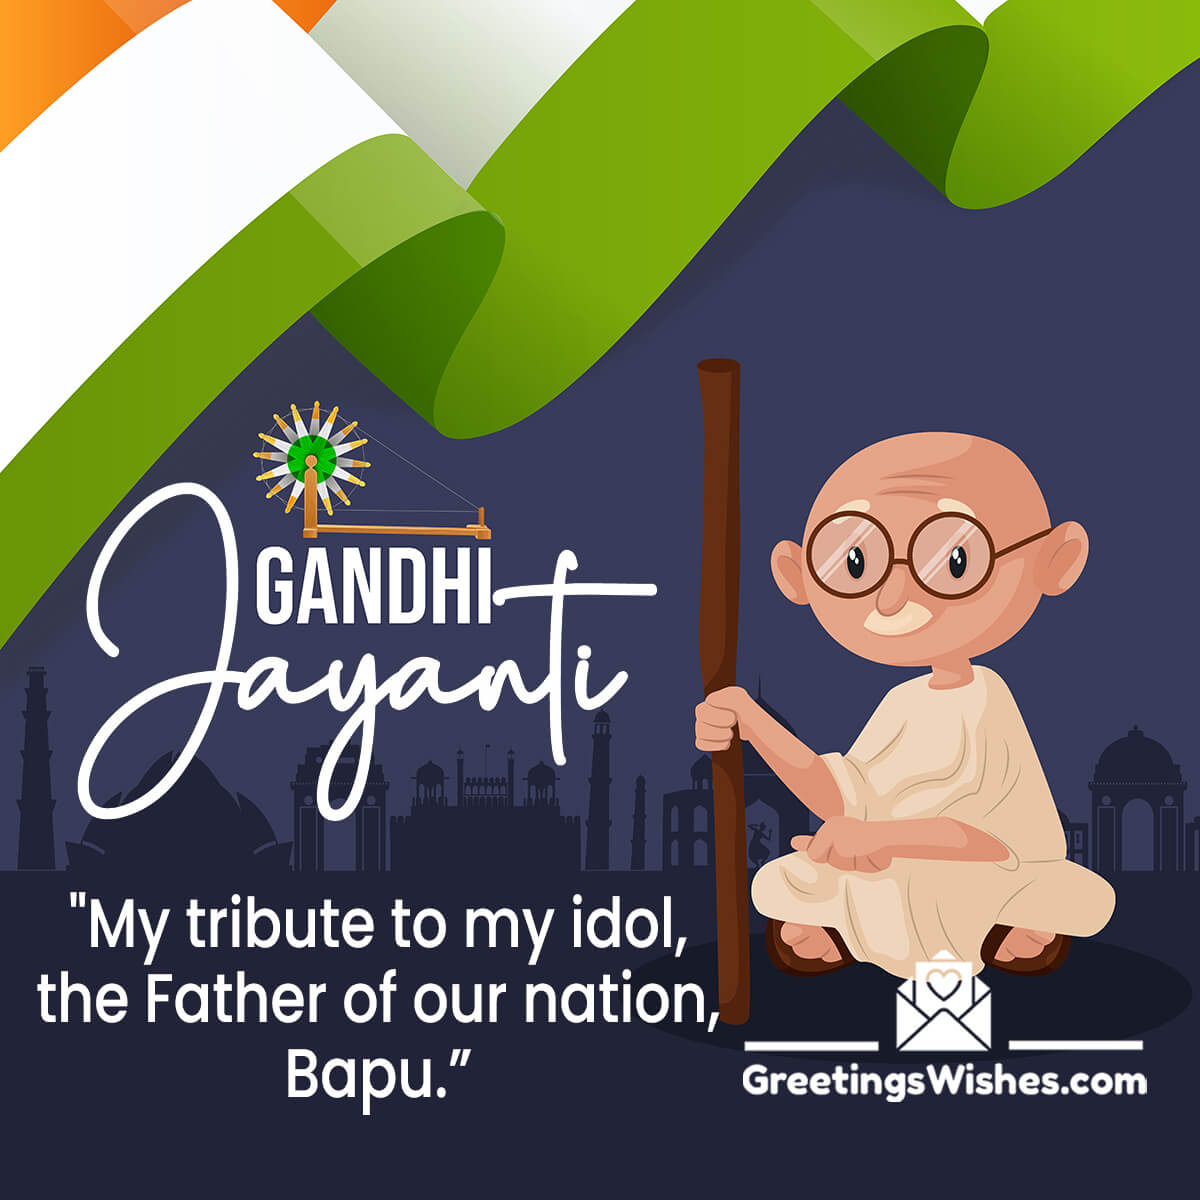 Gandhi Jayanti Image